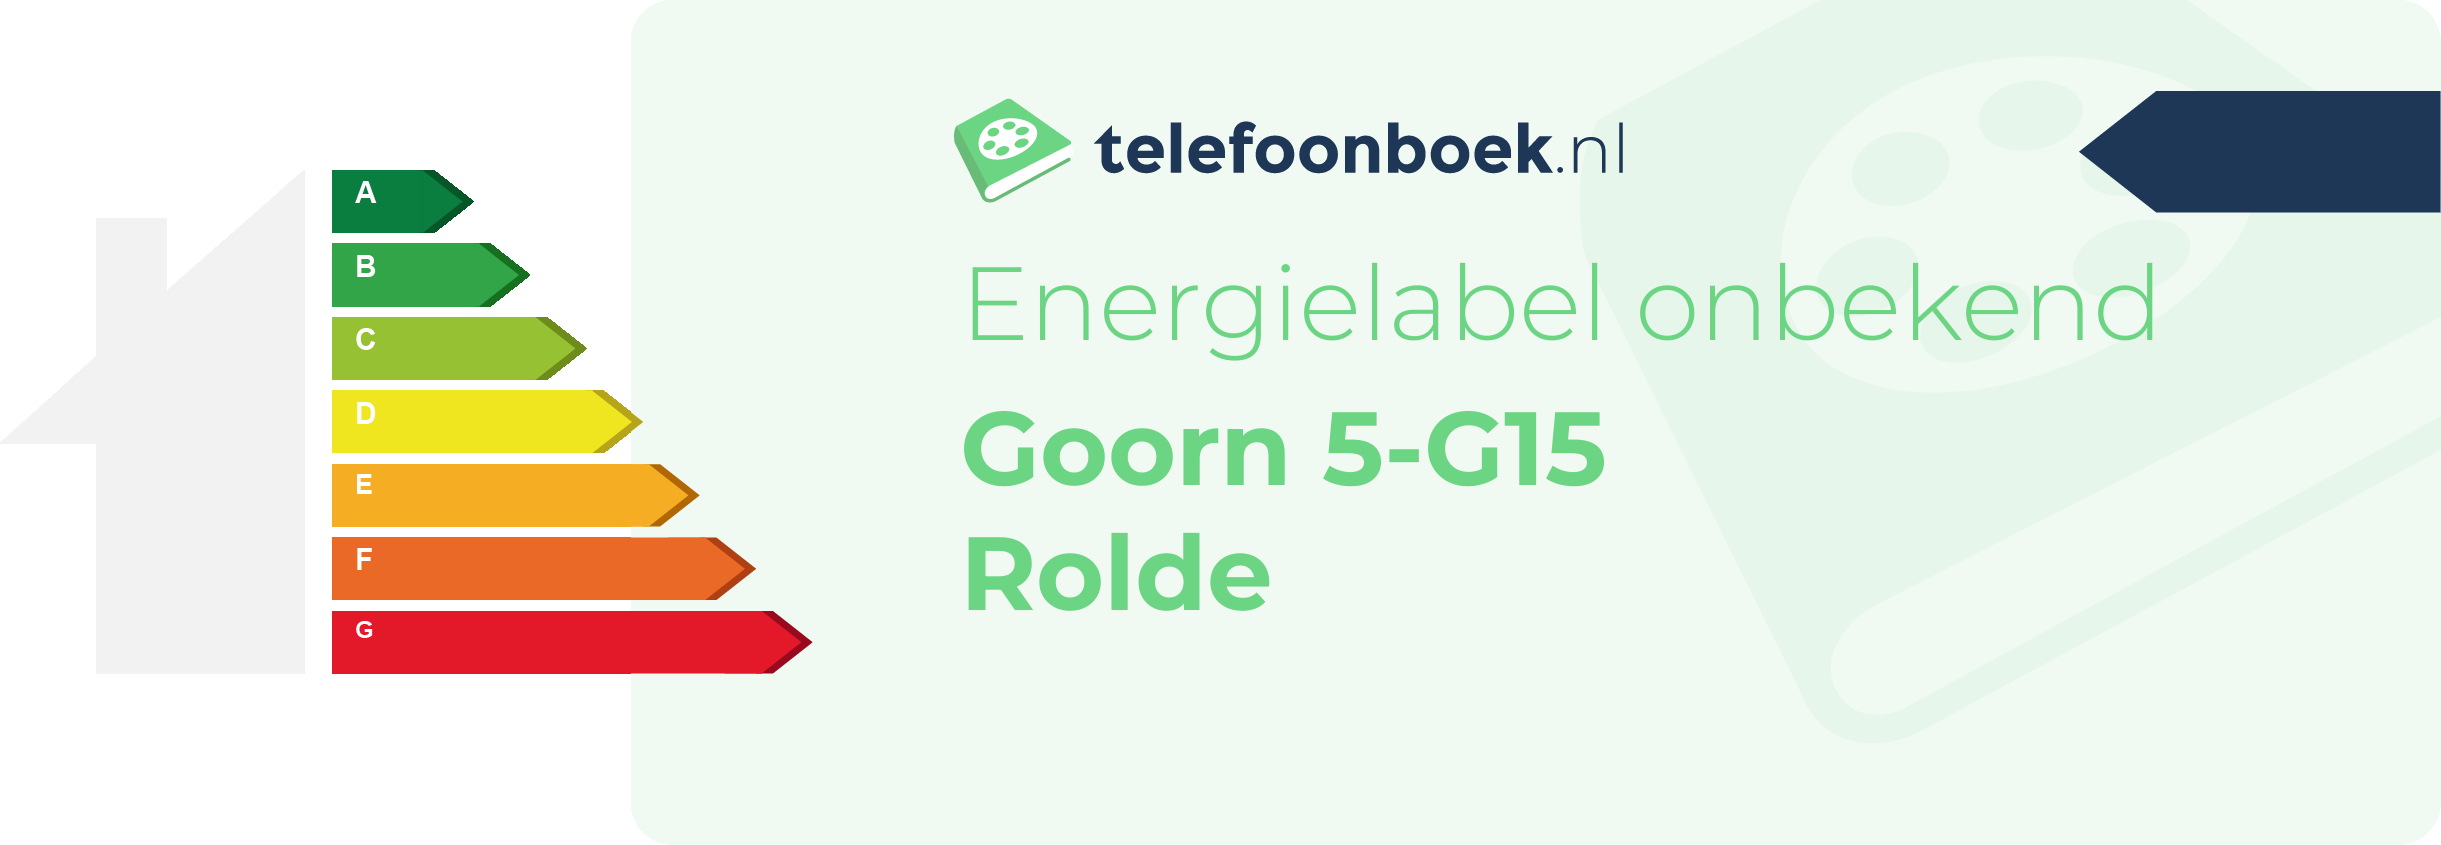 Energielabel Goorn 5-G15 Rolde